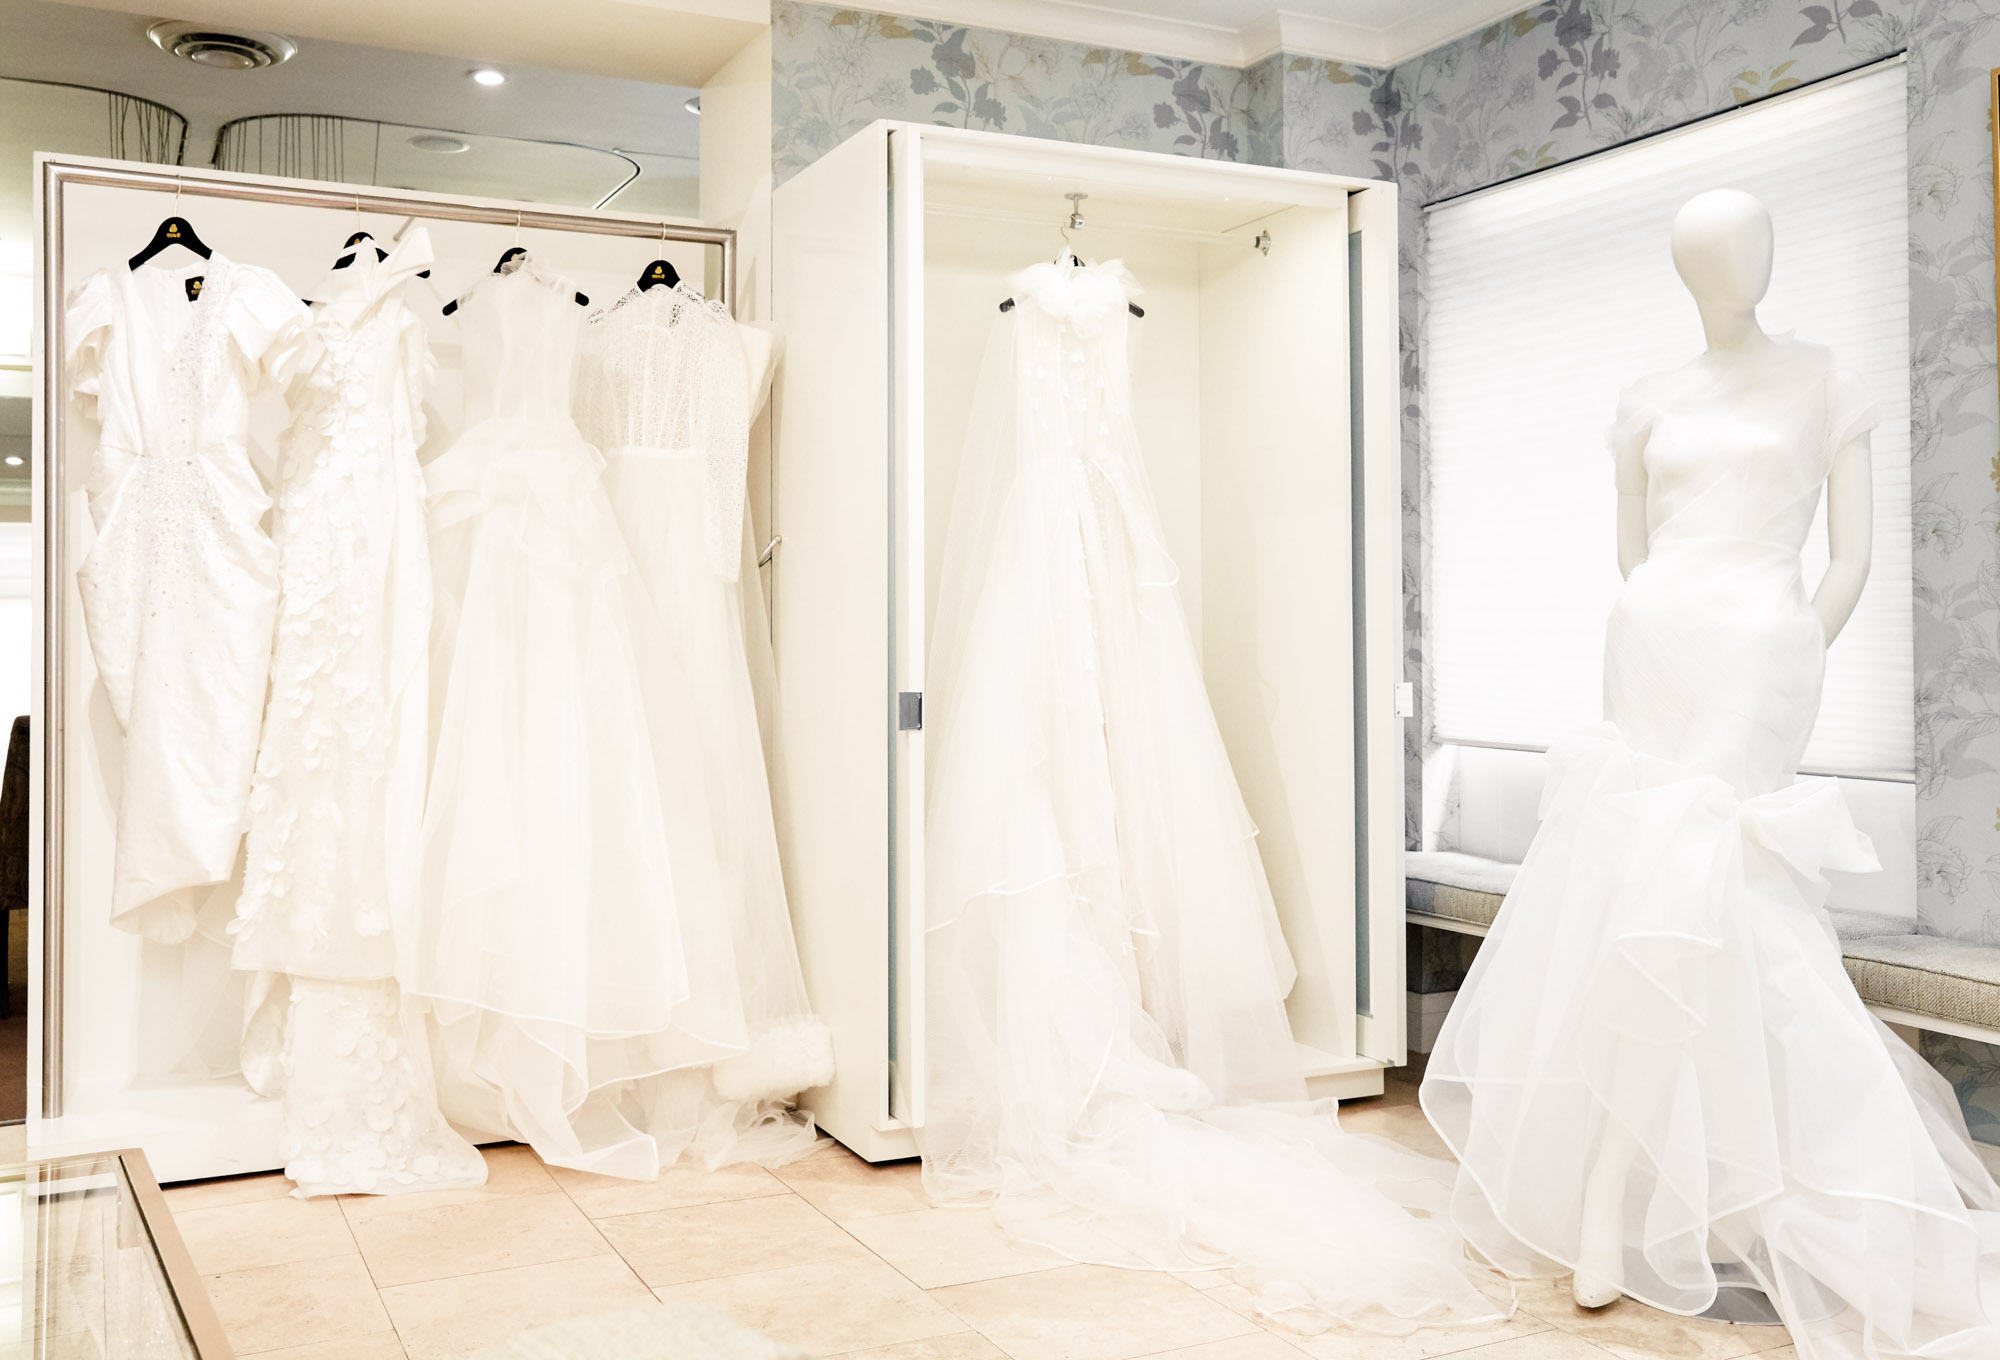 Bạn đang tìm kiếm chiếc váy cưới hoàn hảo cho mình? Hãy nhấn chuột vào hình ảnh và khám phá thế giới thời trang của Phương My Bridal. Với những thiết kế sang trọng và tinh tế, chúng tôi giúp bạn trở thành người đẹp nhất trong ngày trọng đại của mình.